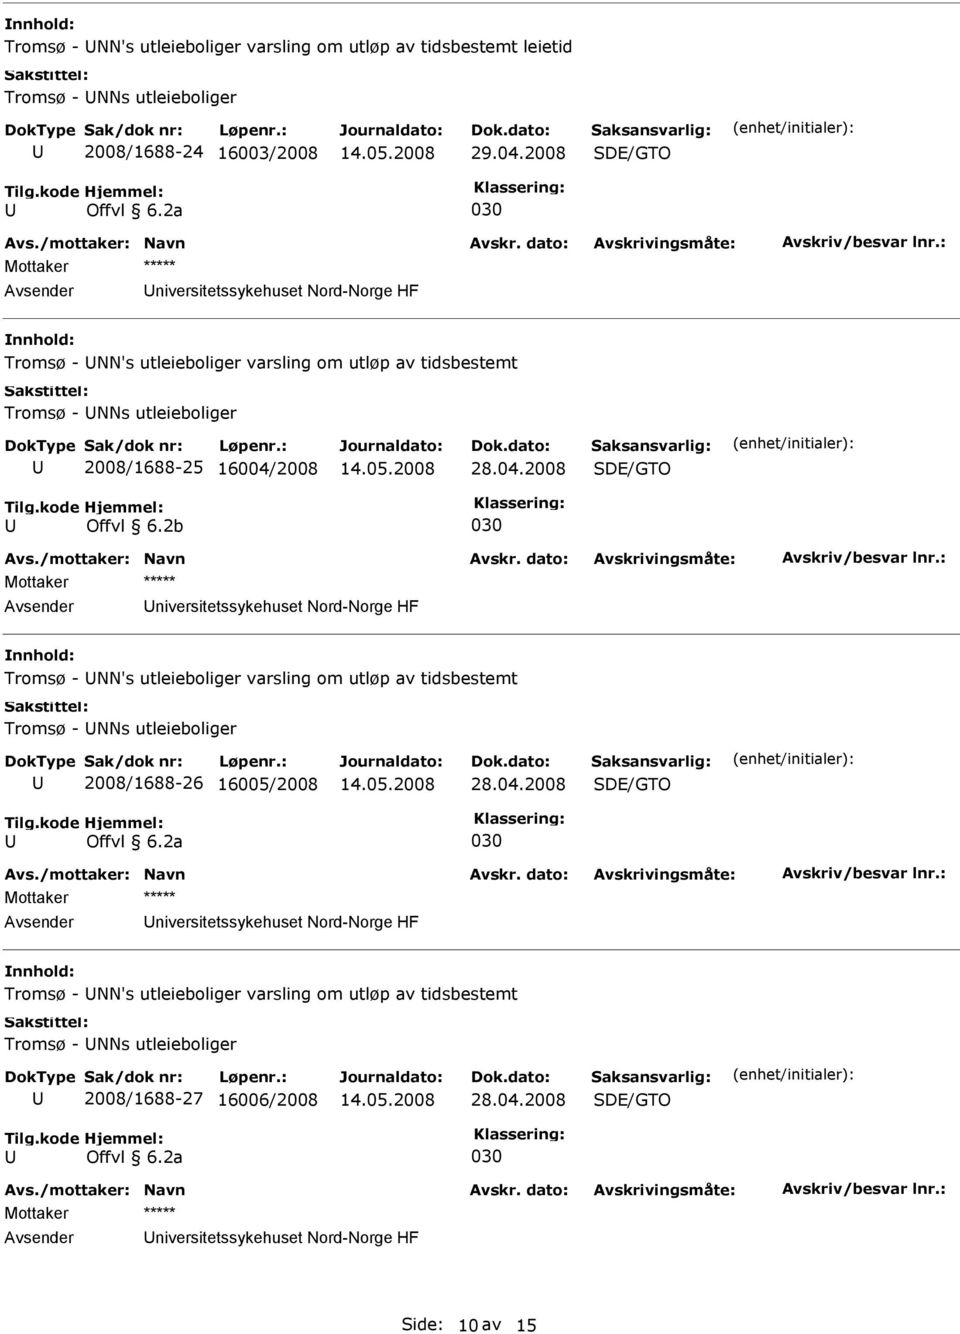 2b niversitetssykehuset Nord-Norge HF Tromsø - NN's utleieboliger varsling om utløp av tidsbestemt Tromsø - NNs utleieboliger 2008/1688-26 16005/2008